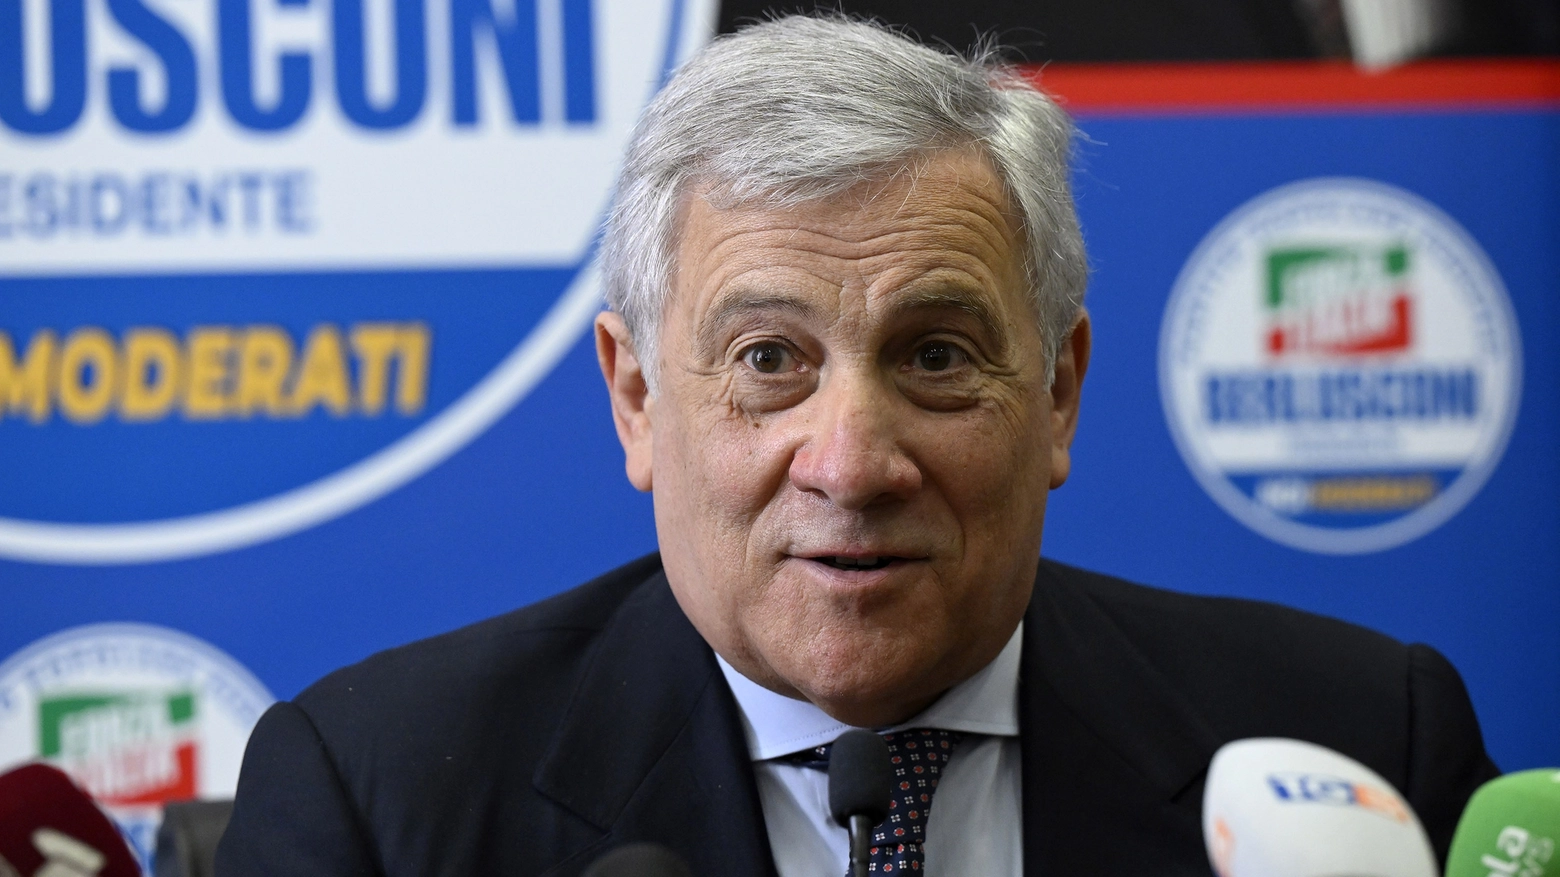 Dieci videointerviste ai protagonisti della politica italiana in vista delle elezioni dell’8 e 9 giugno. Tajani primo ospite del vodcast